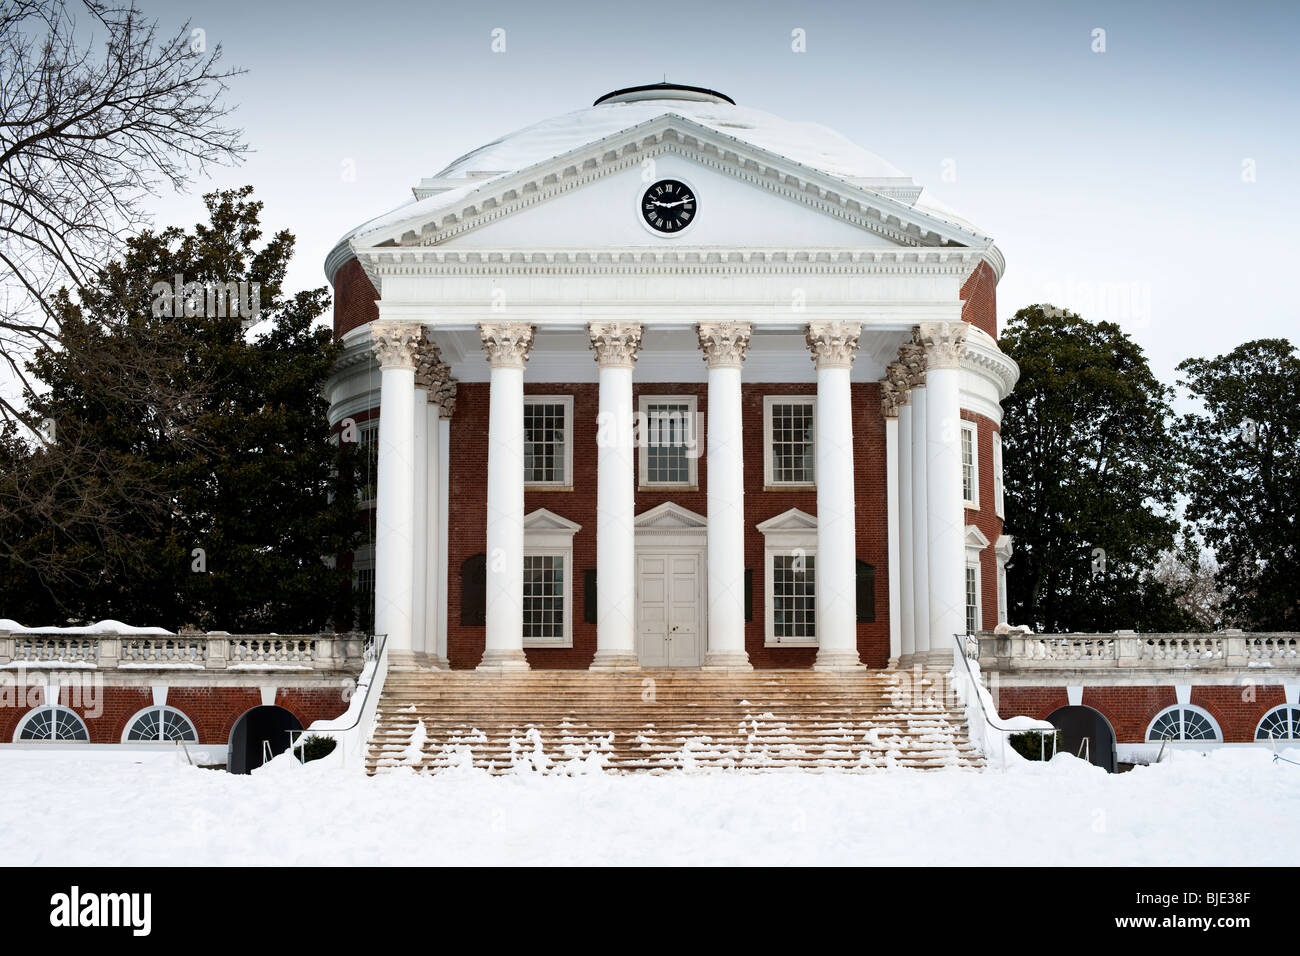 The Rotunda at the University of Virginia, Charlottesville, Virginia, USA Stock Photo